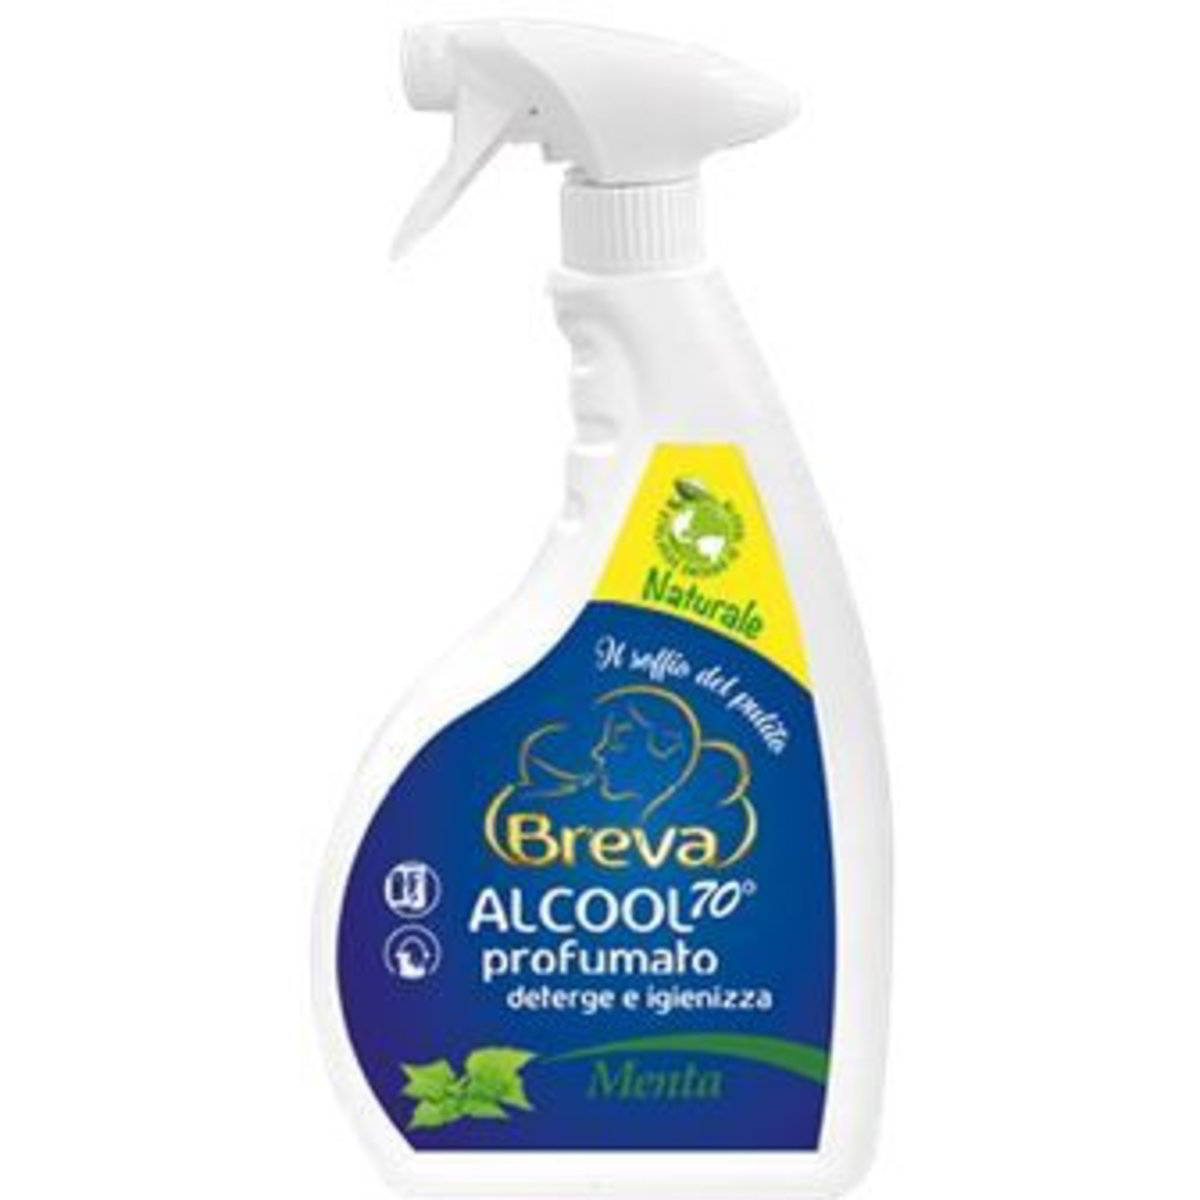 Alcool detergente profumato alla menta BREVA 600 ML - Coop Shop